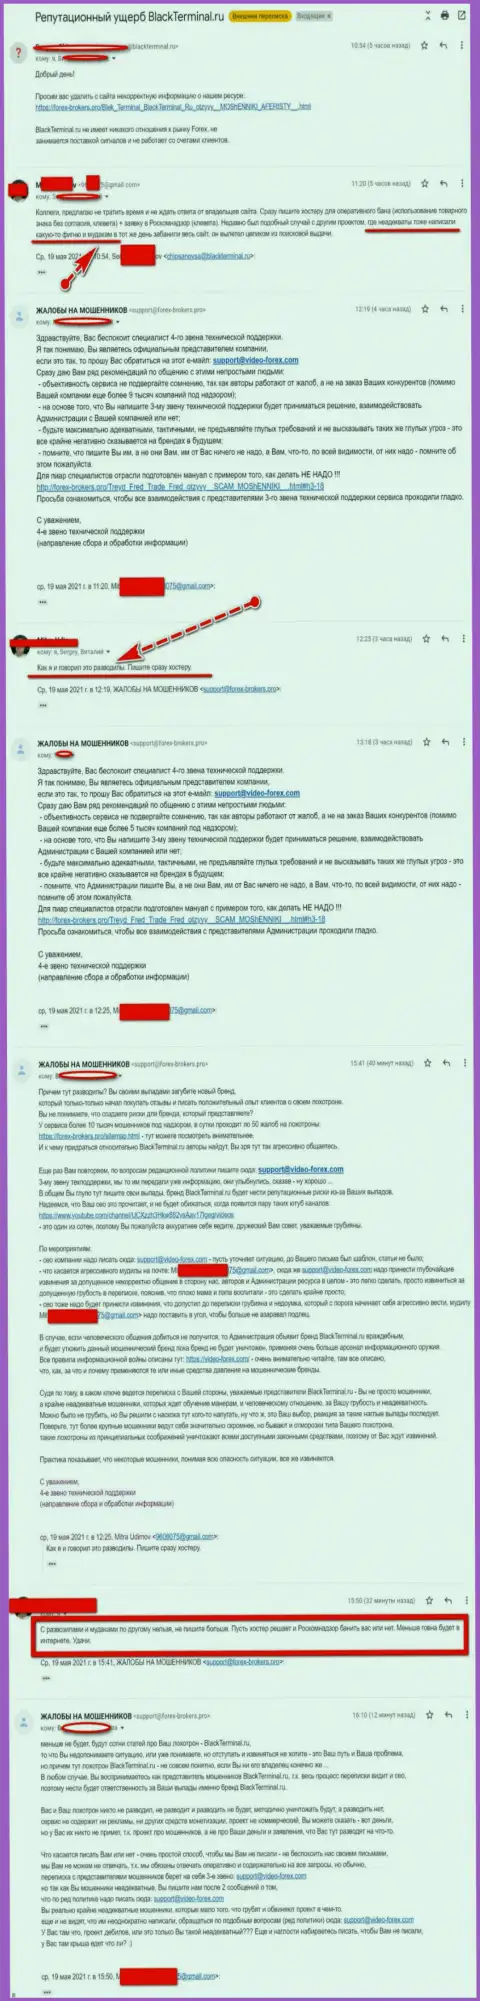 Онлайн переписка Администрации web-портала, с отзывами о BlackTerminal Ru, с представителями указанного незаконно действующего онлайн сервиса